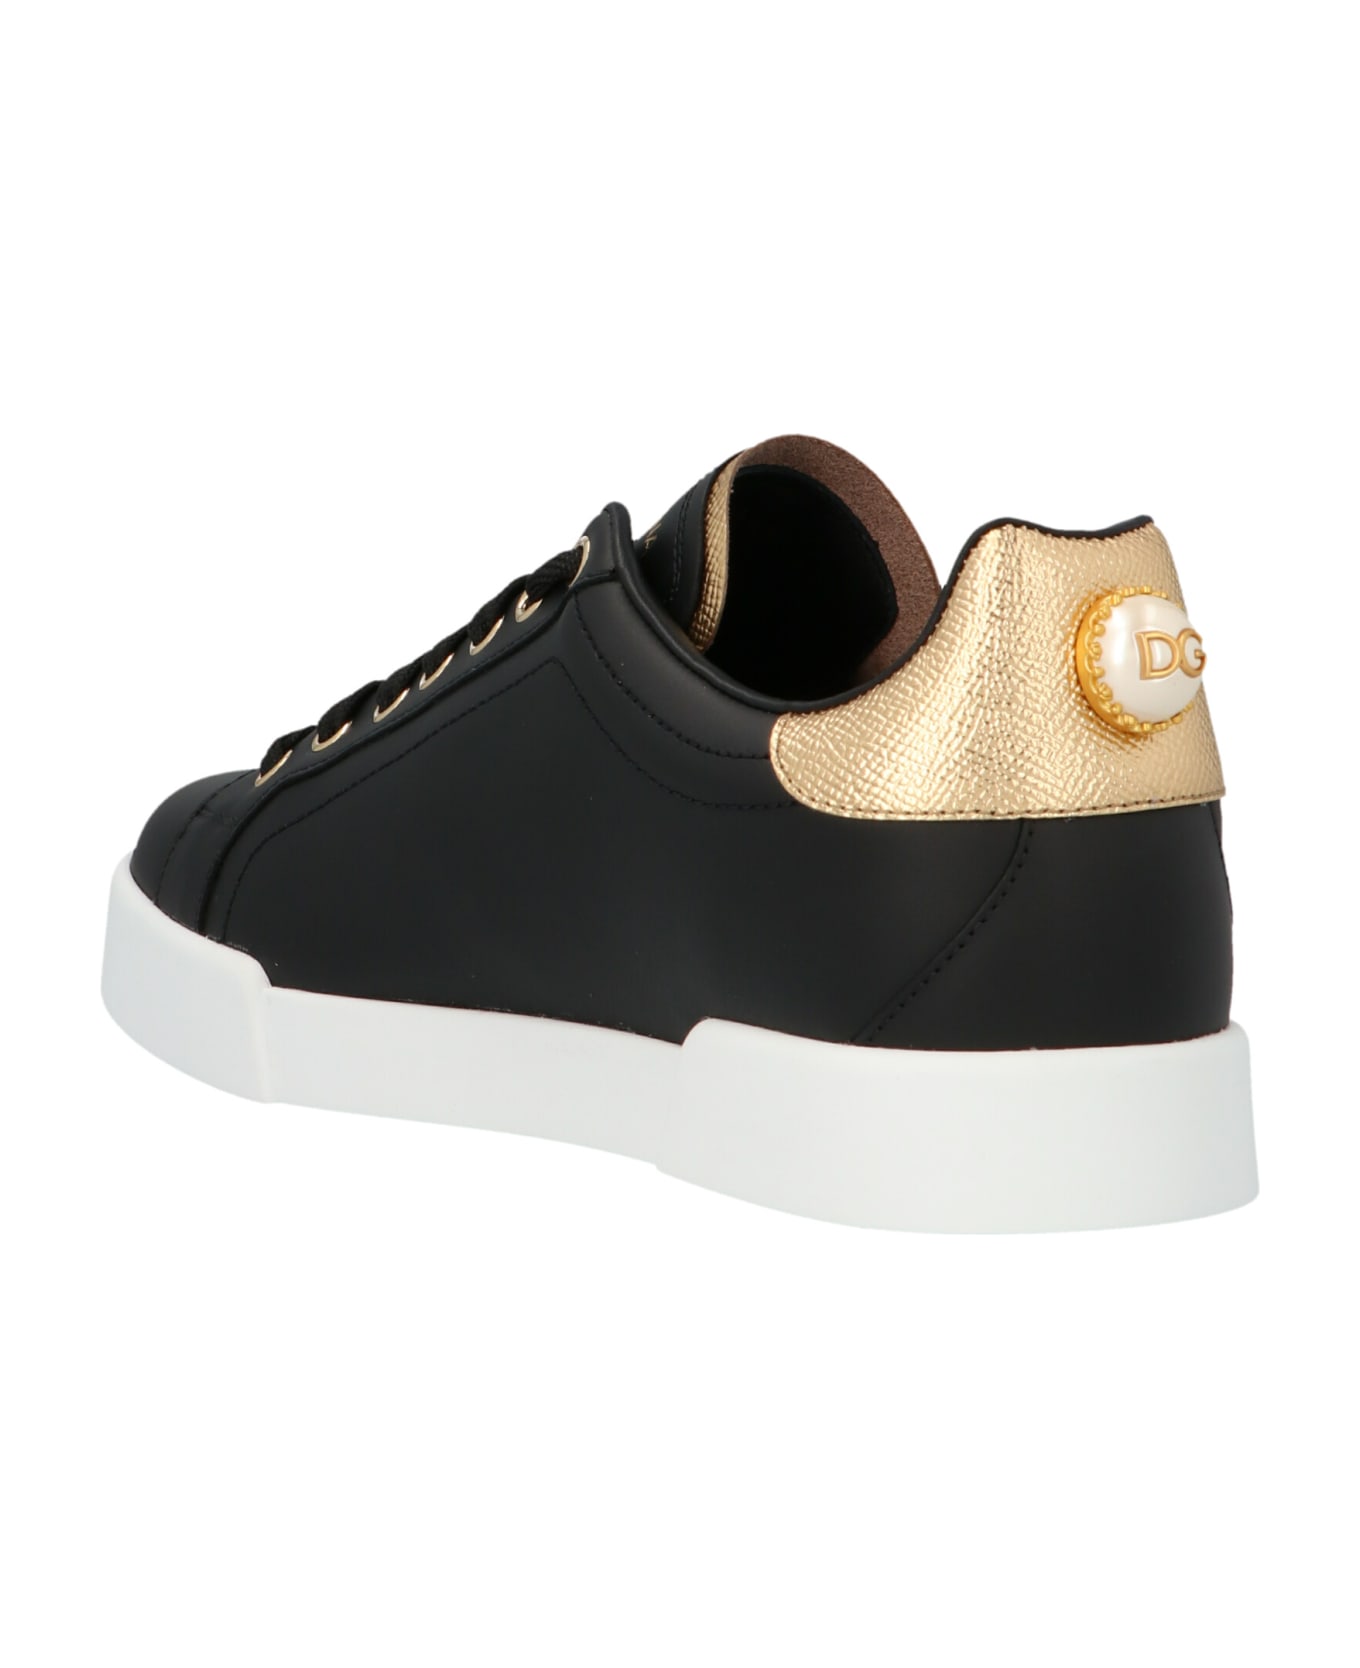 Dolce & Gabbana Portofino Sneakers - BLACK/GOLD スニーカー